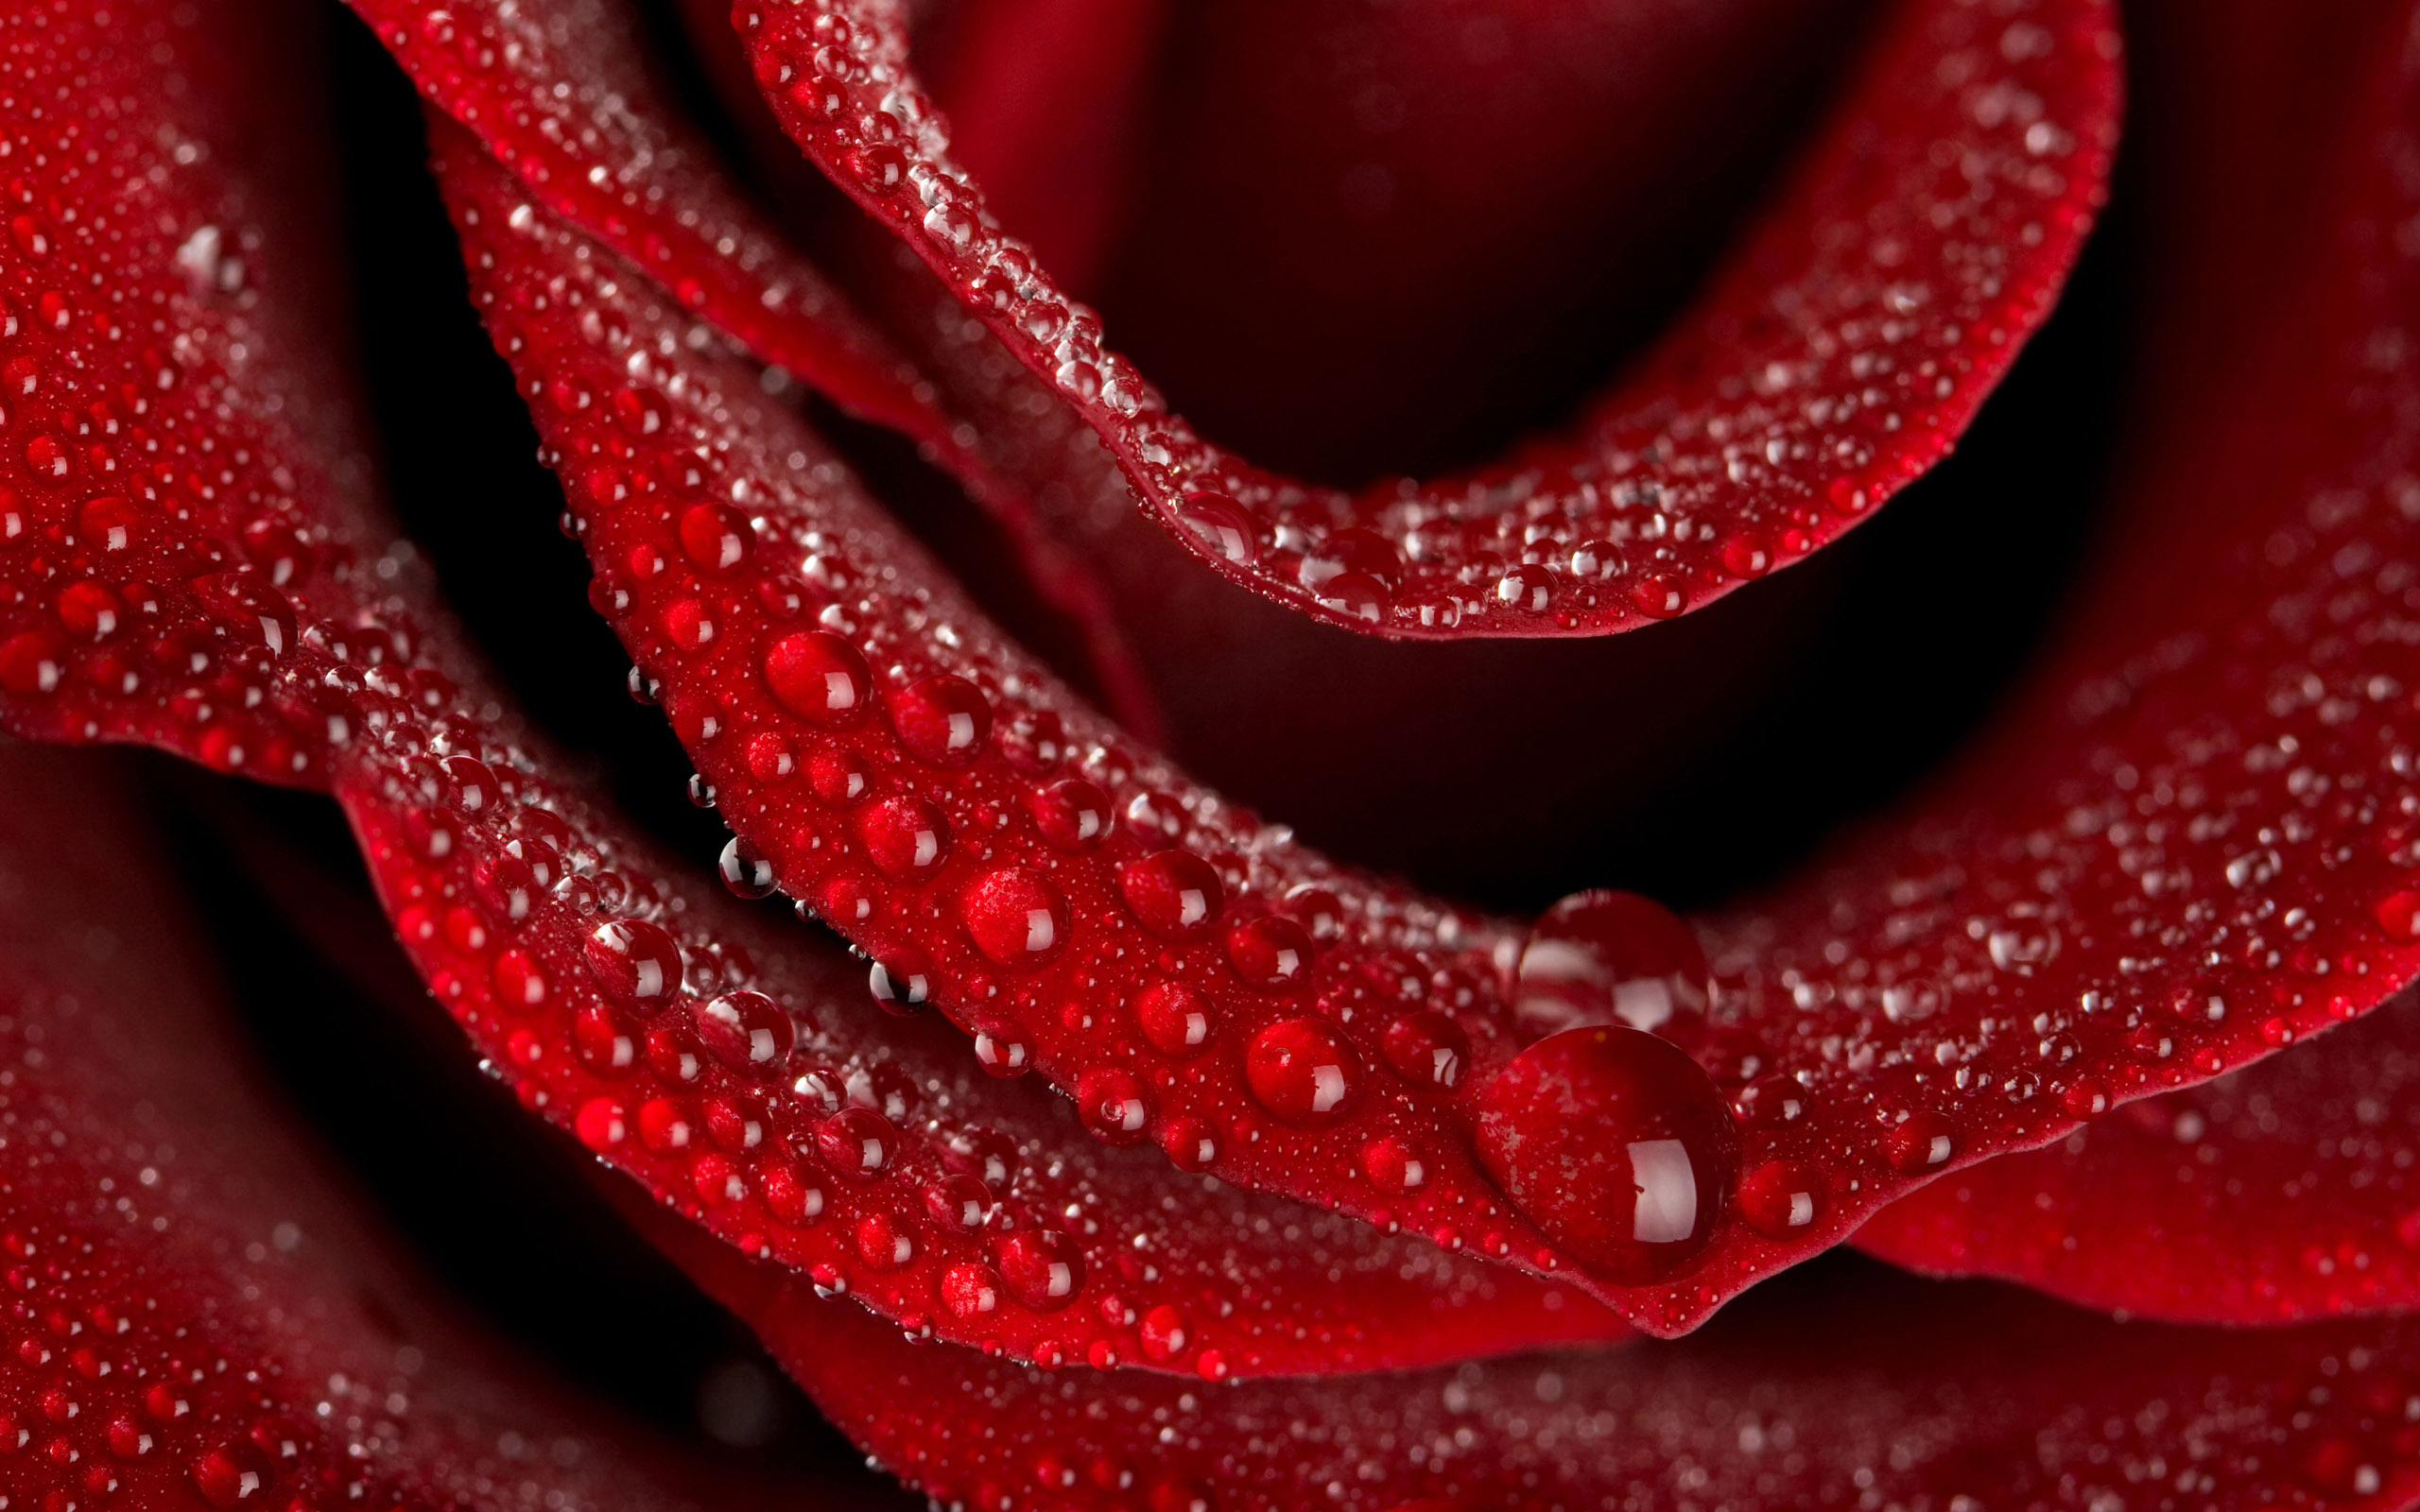 природа цветы роза красная загрузить